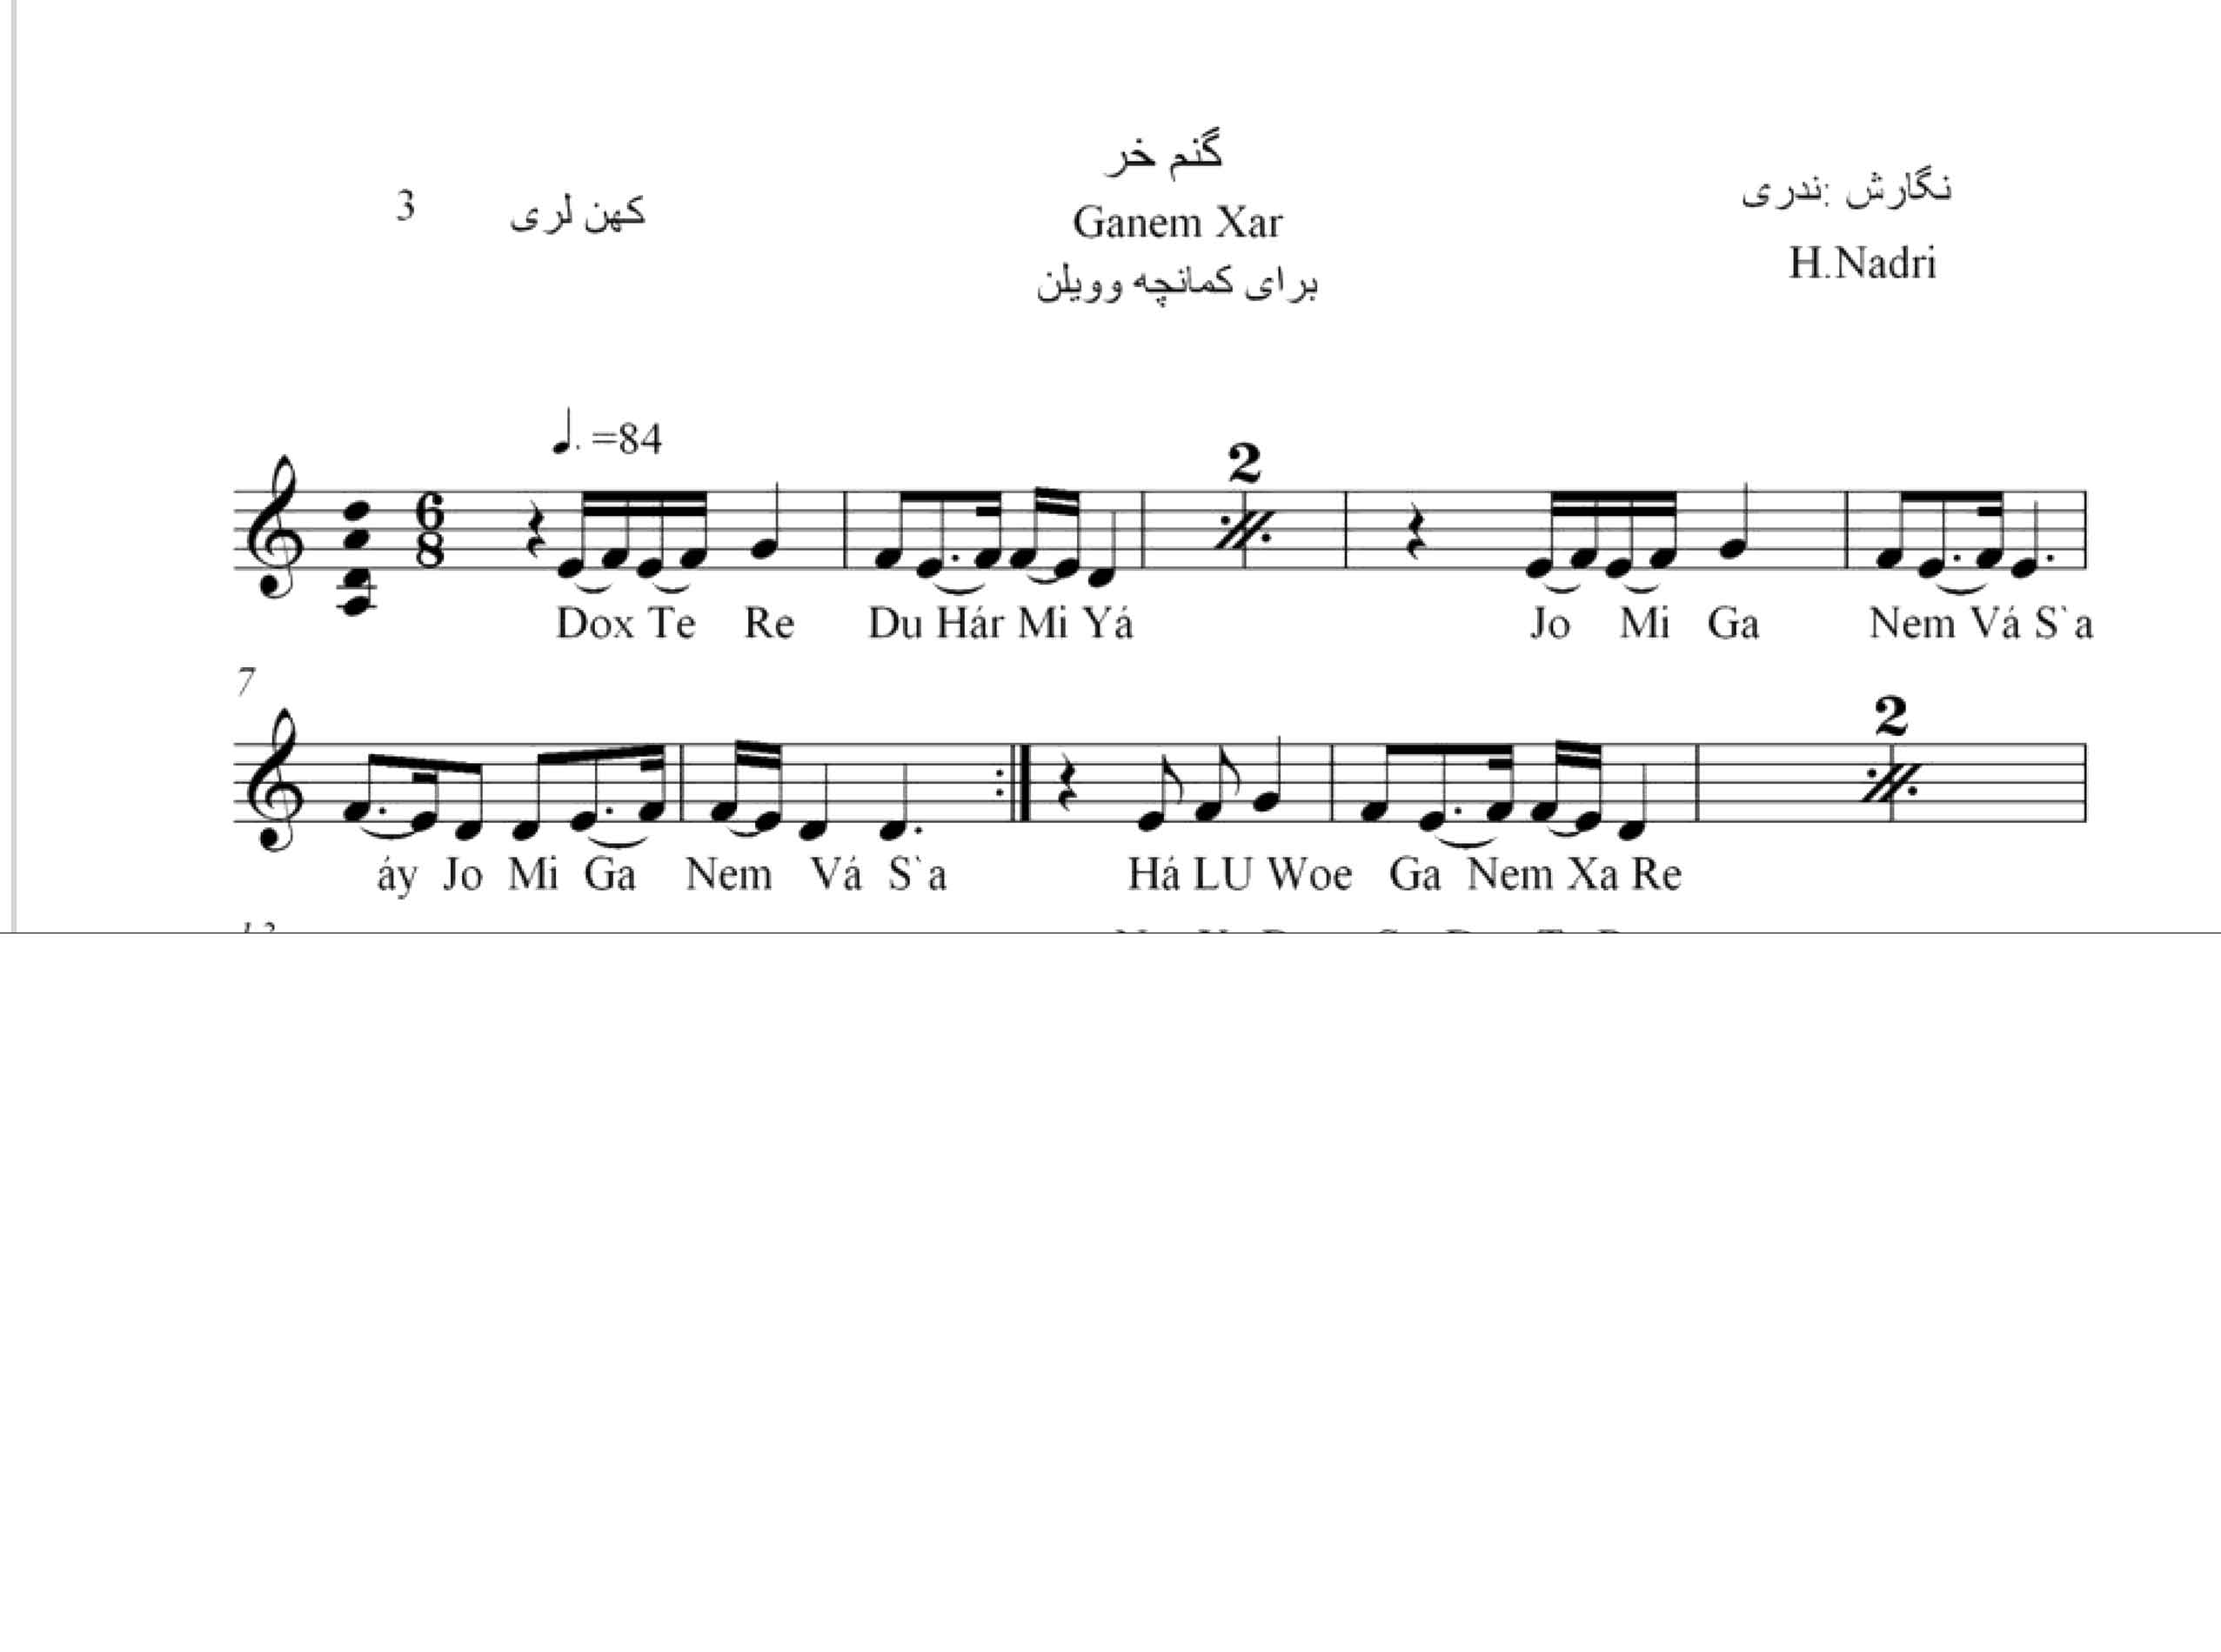 نت آهنگ گنم خر محلی لری قابل اجرا با کمانچه و دیگر ساز ها اثر حجت اله ندری